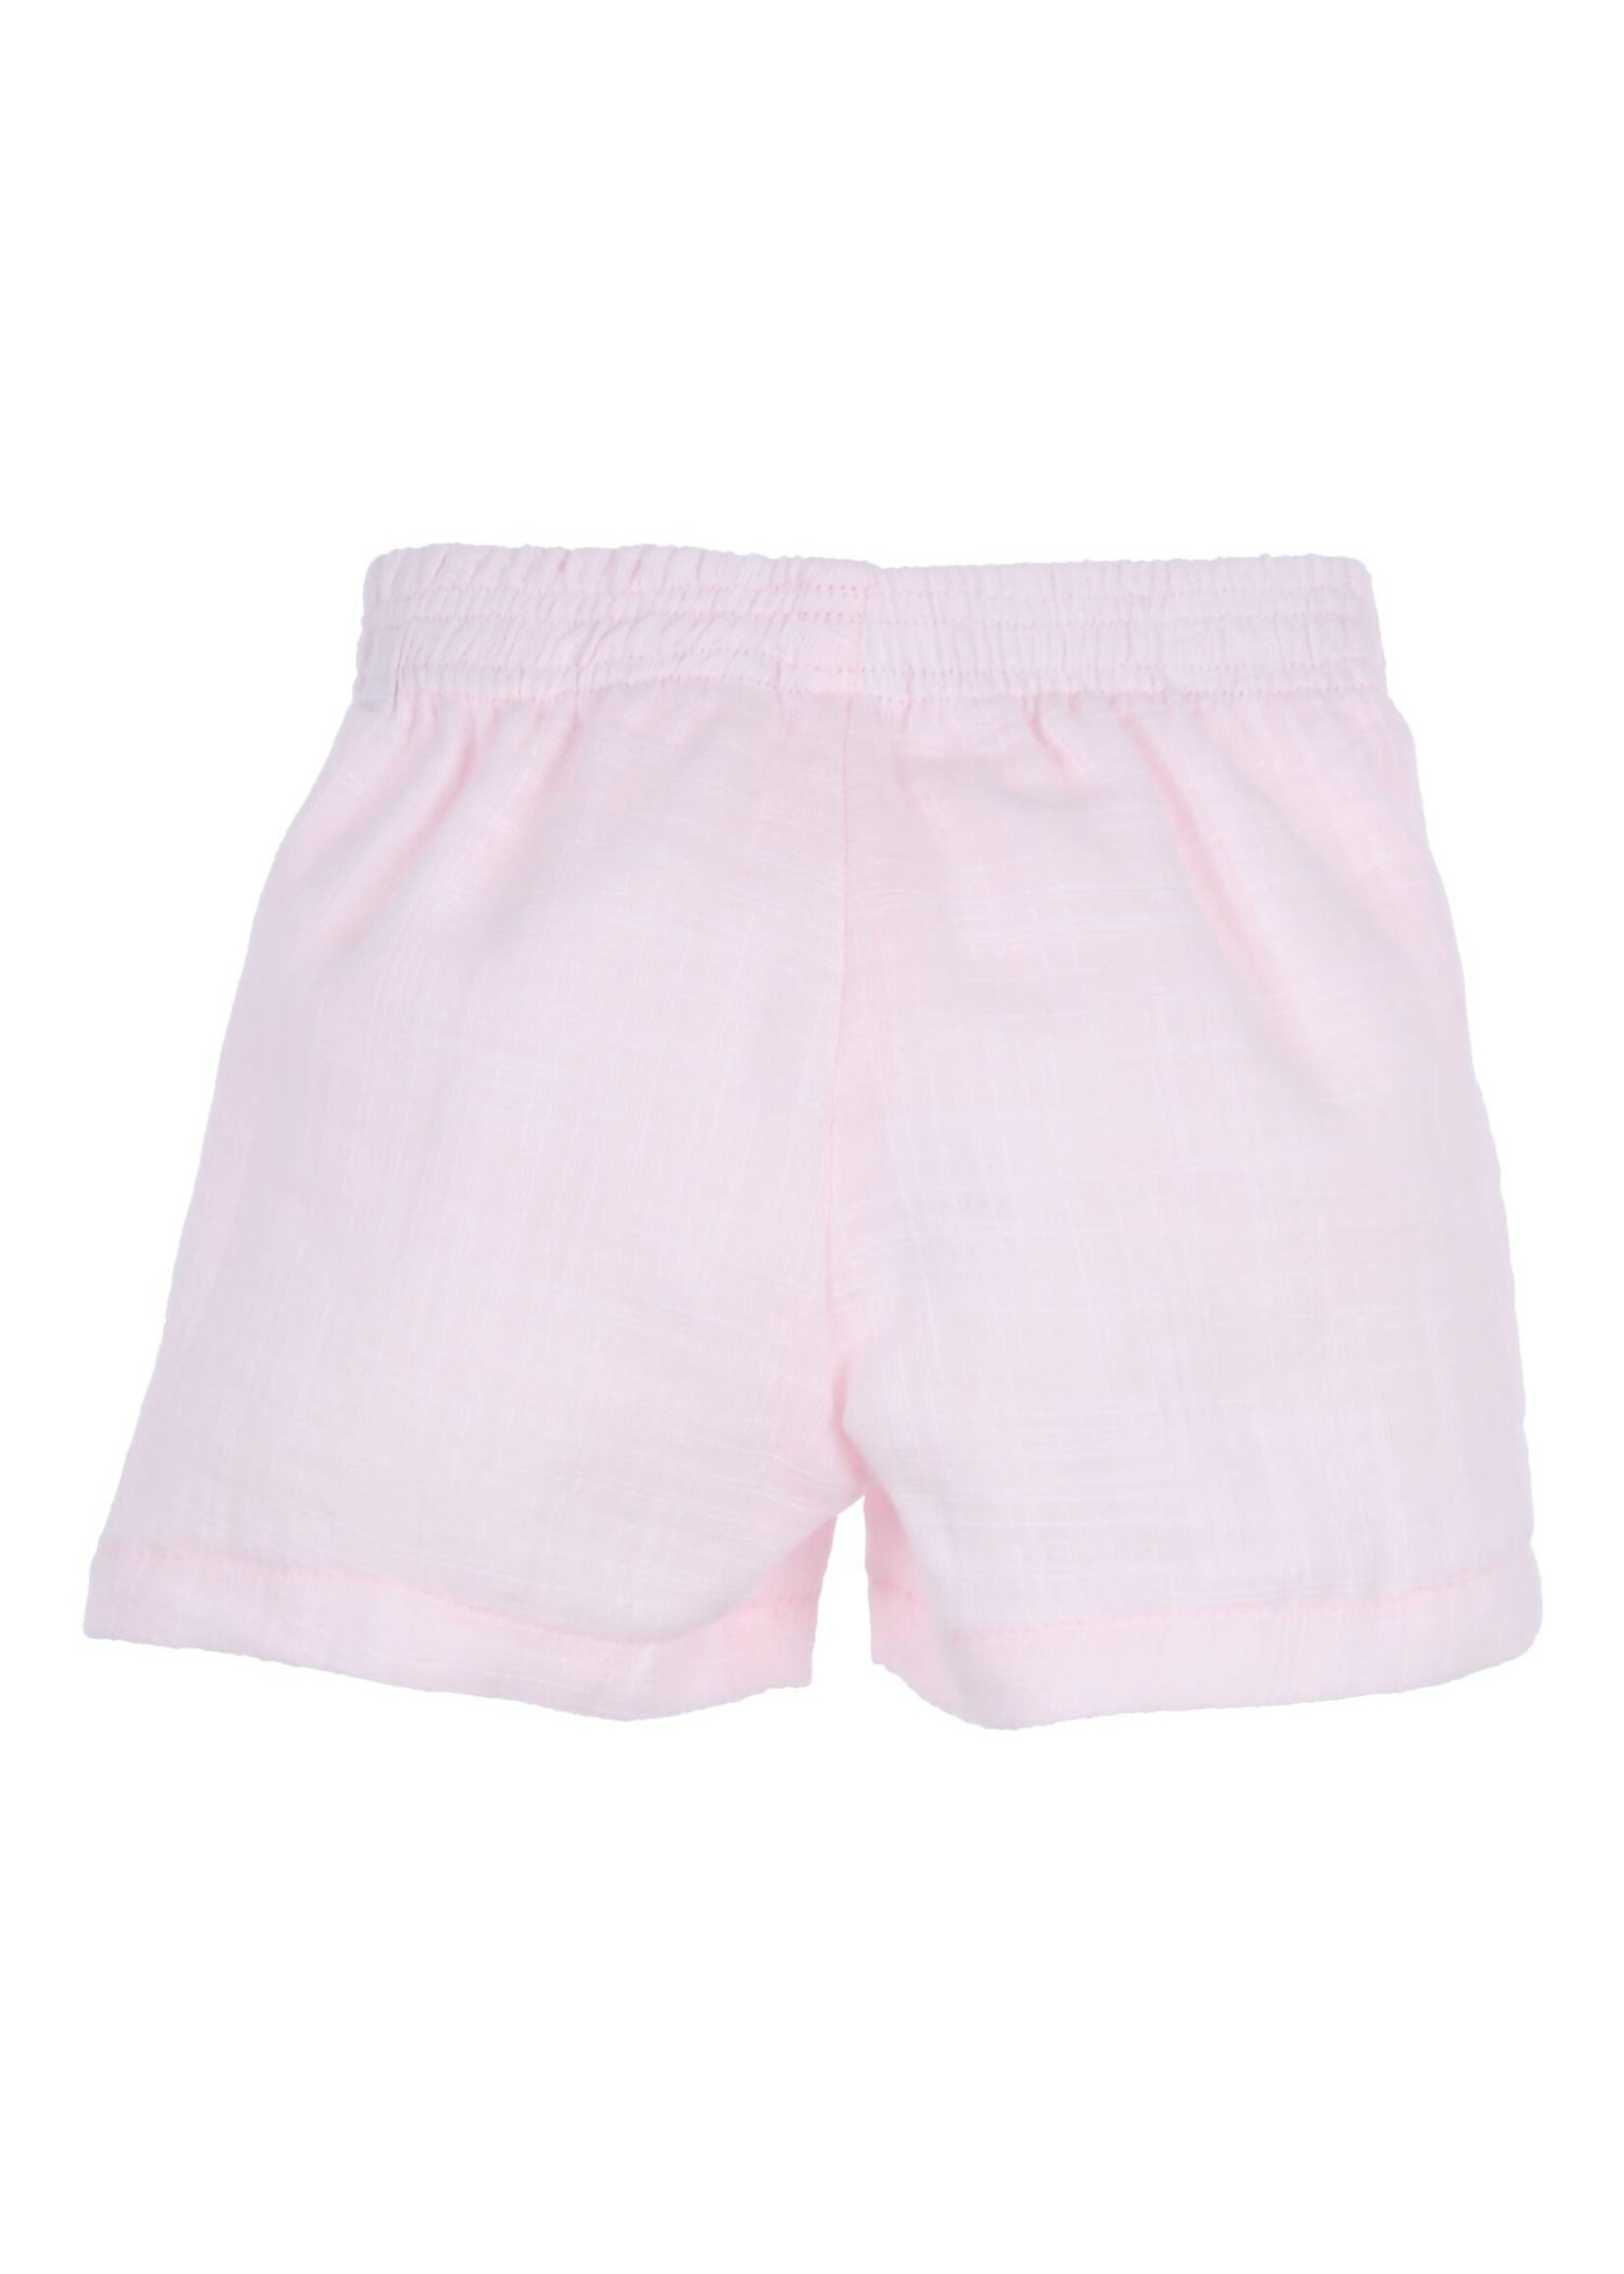 Gymp Girls Shorts Artemis 400-4419-10 Light Pink